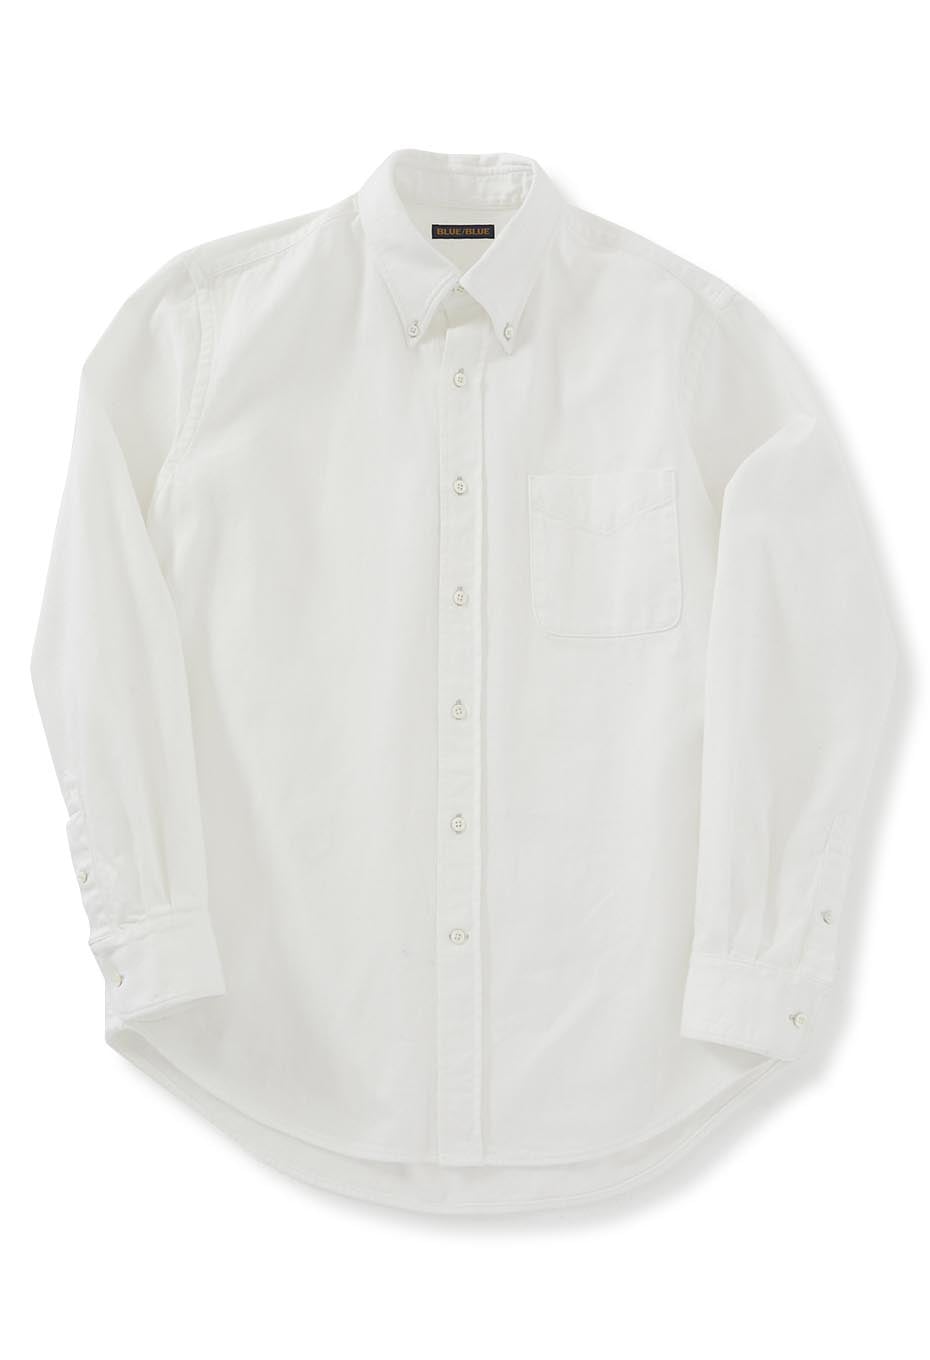 White denim button down shirt